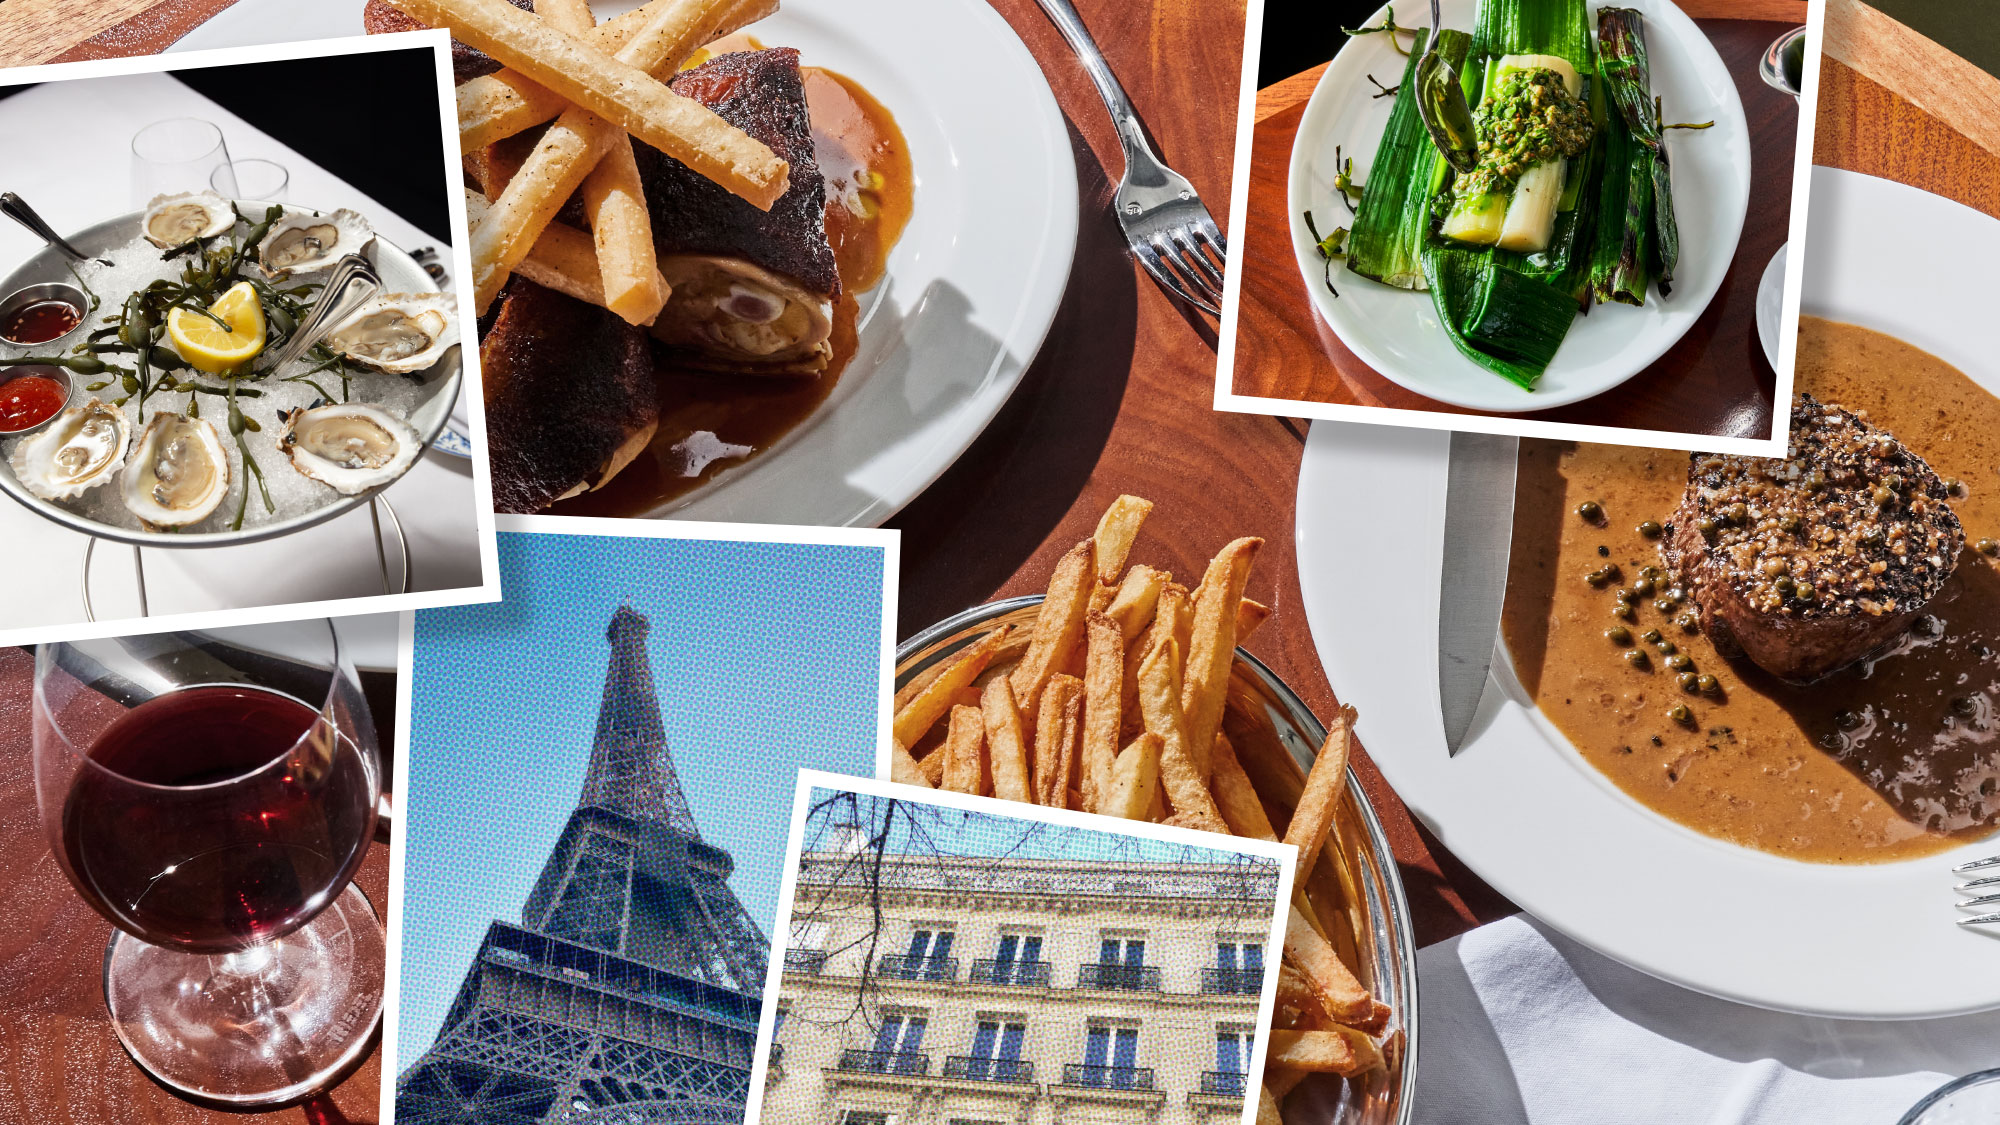 https://blog.resy.com/wp-content/uploads/2023/01/Resy_Blog-Toppers_French-Restaurants-2.jpg